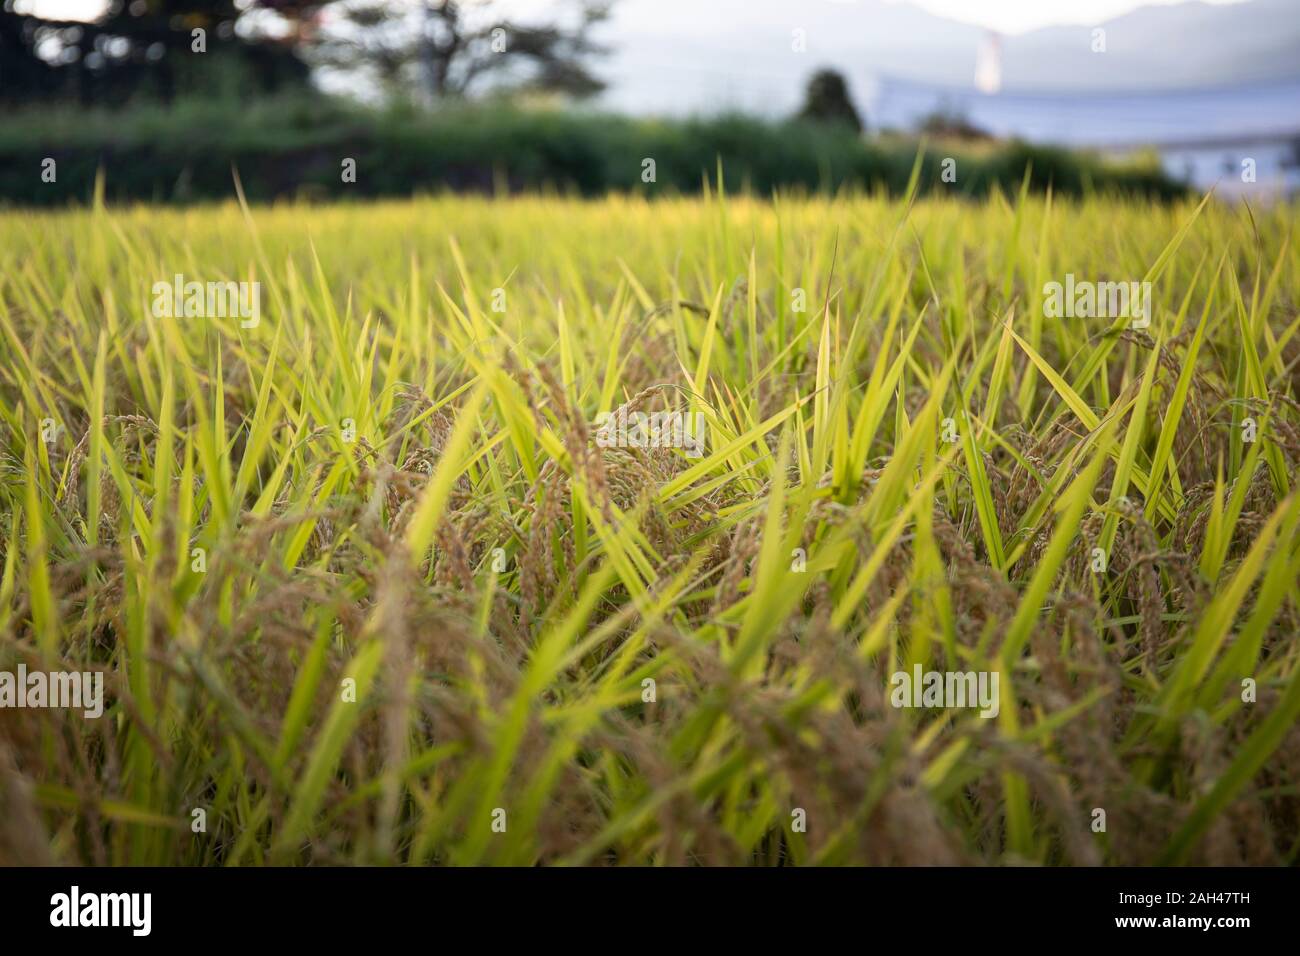 Japan, Takayama, Close-up of yellow blades of grass Stock Photo